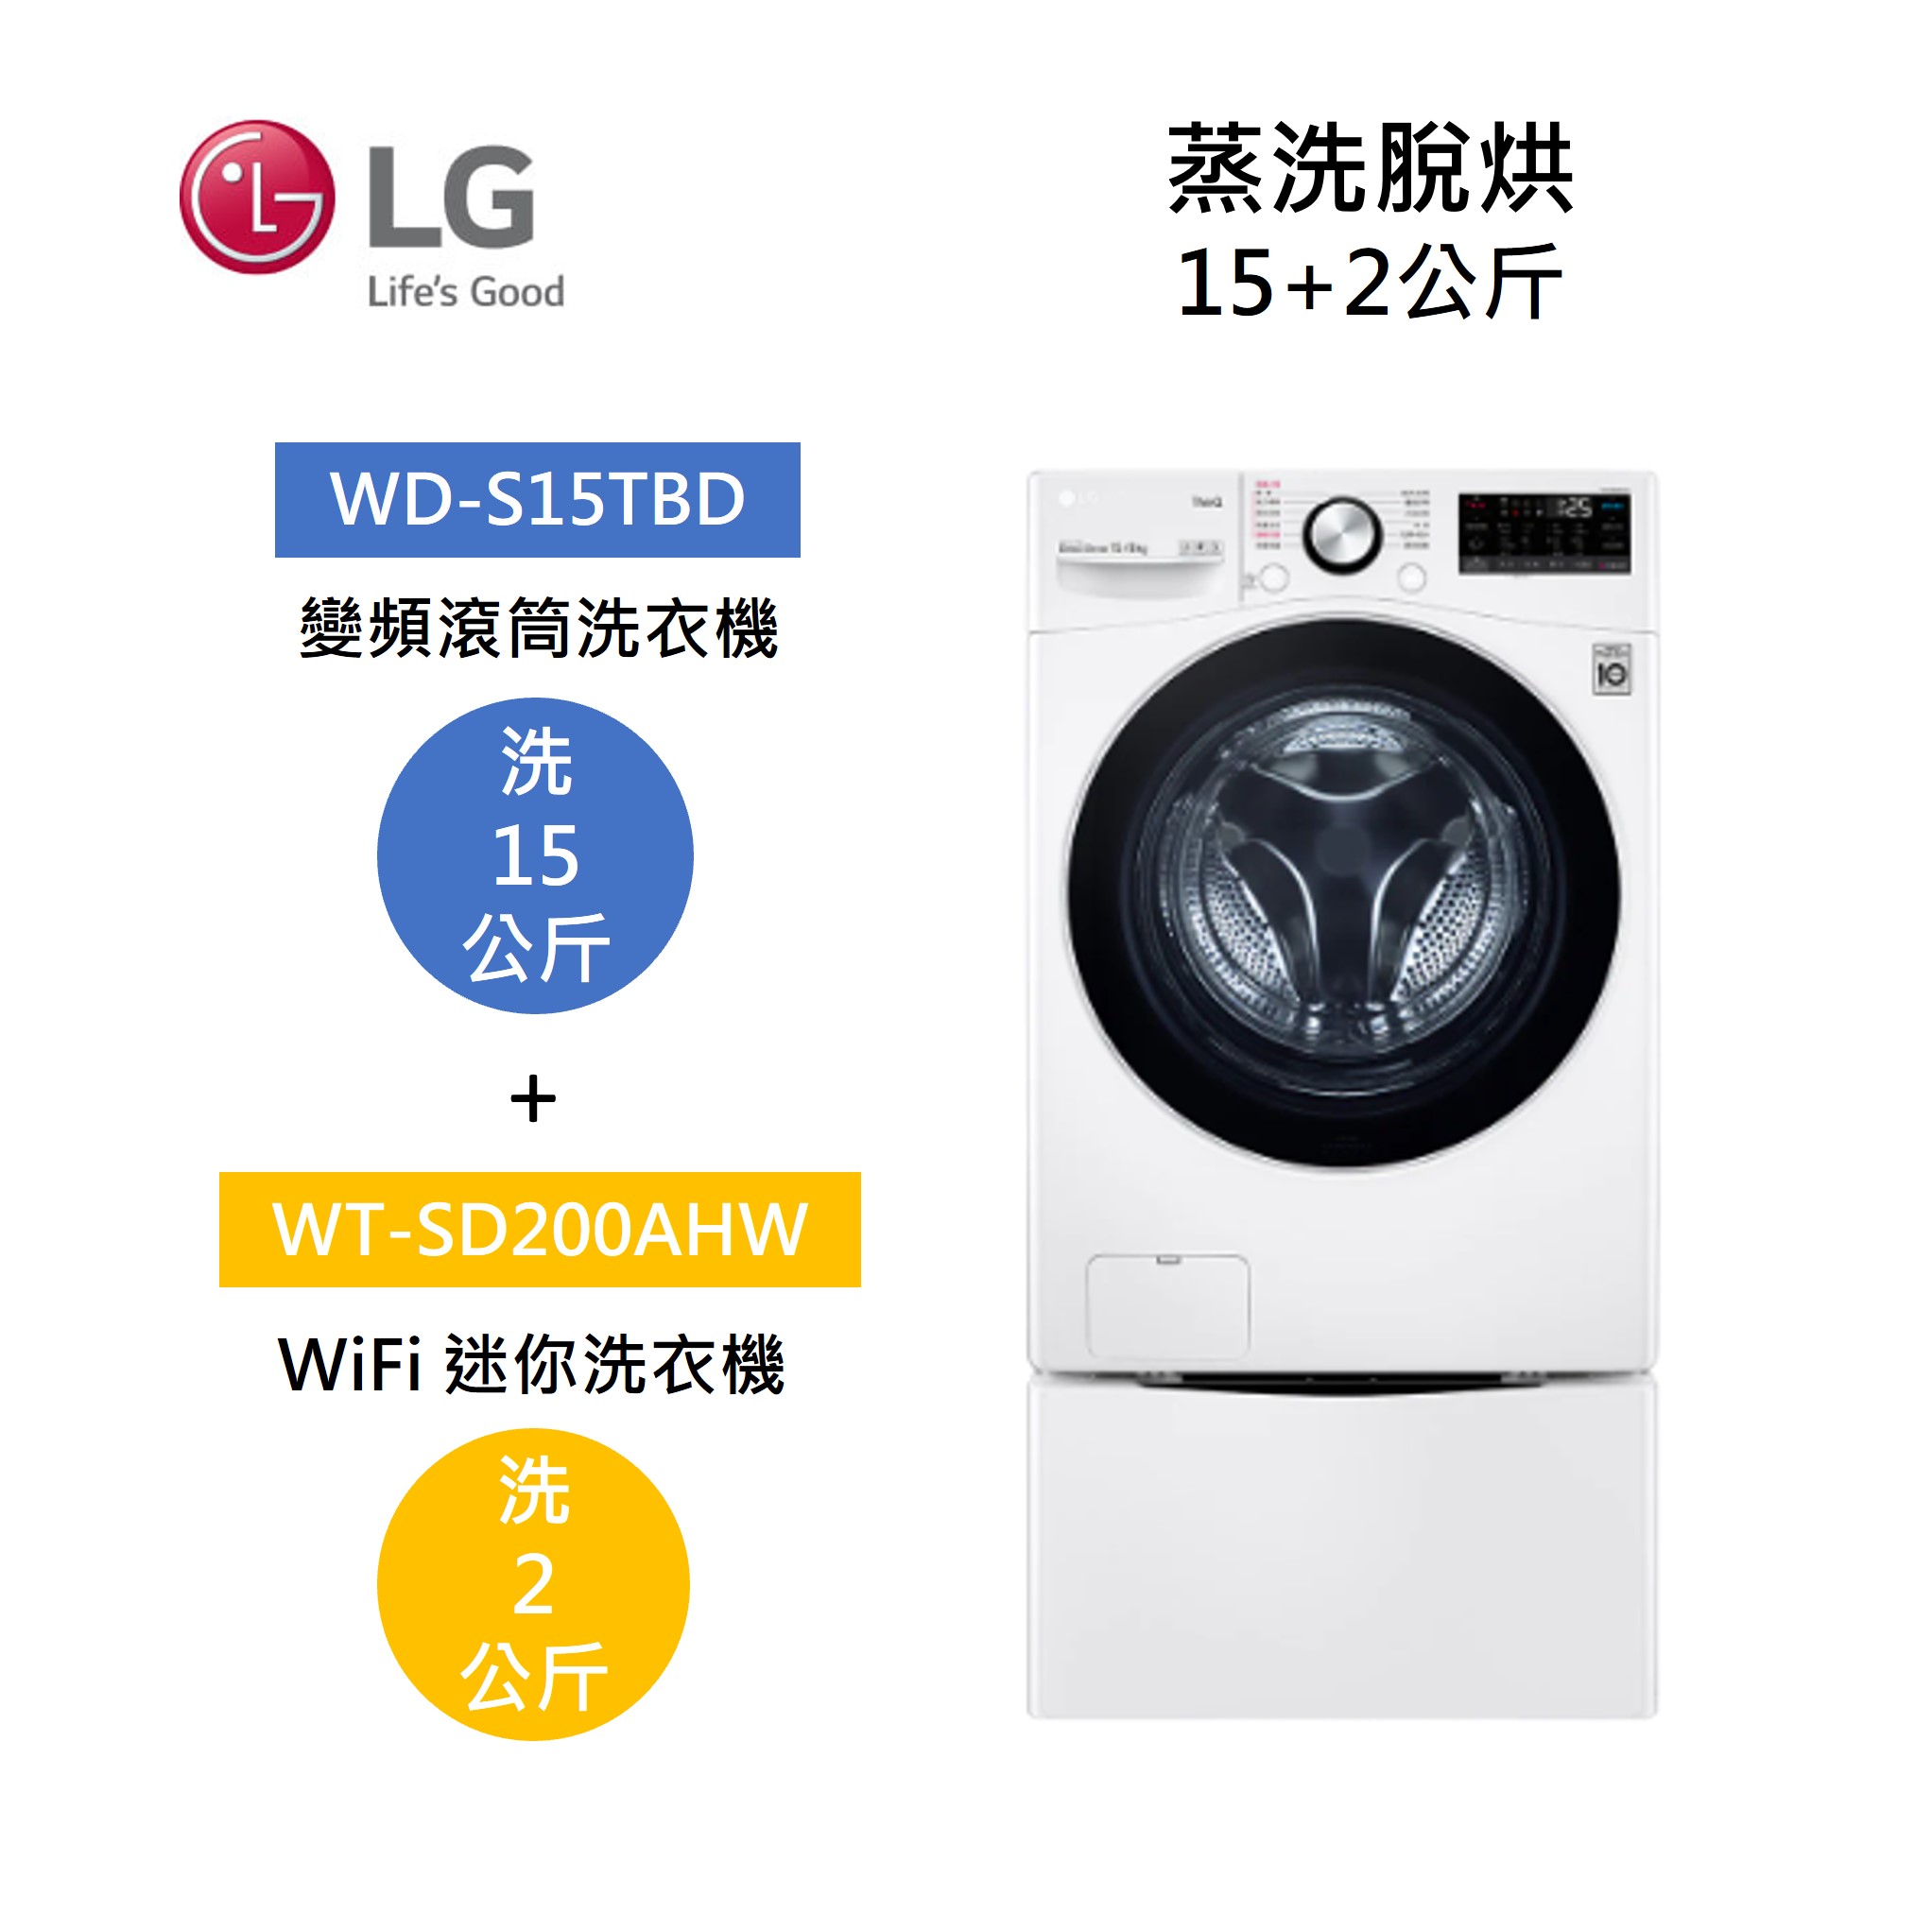 【點數回饋5+8%點數回饋】LG 樂金 WD-S15TBD+WT-SD200AHW 15+2公斤洗衣機 蒸洗脫烘